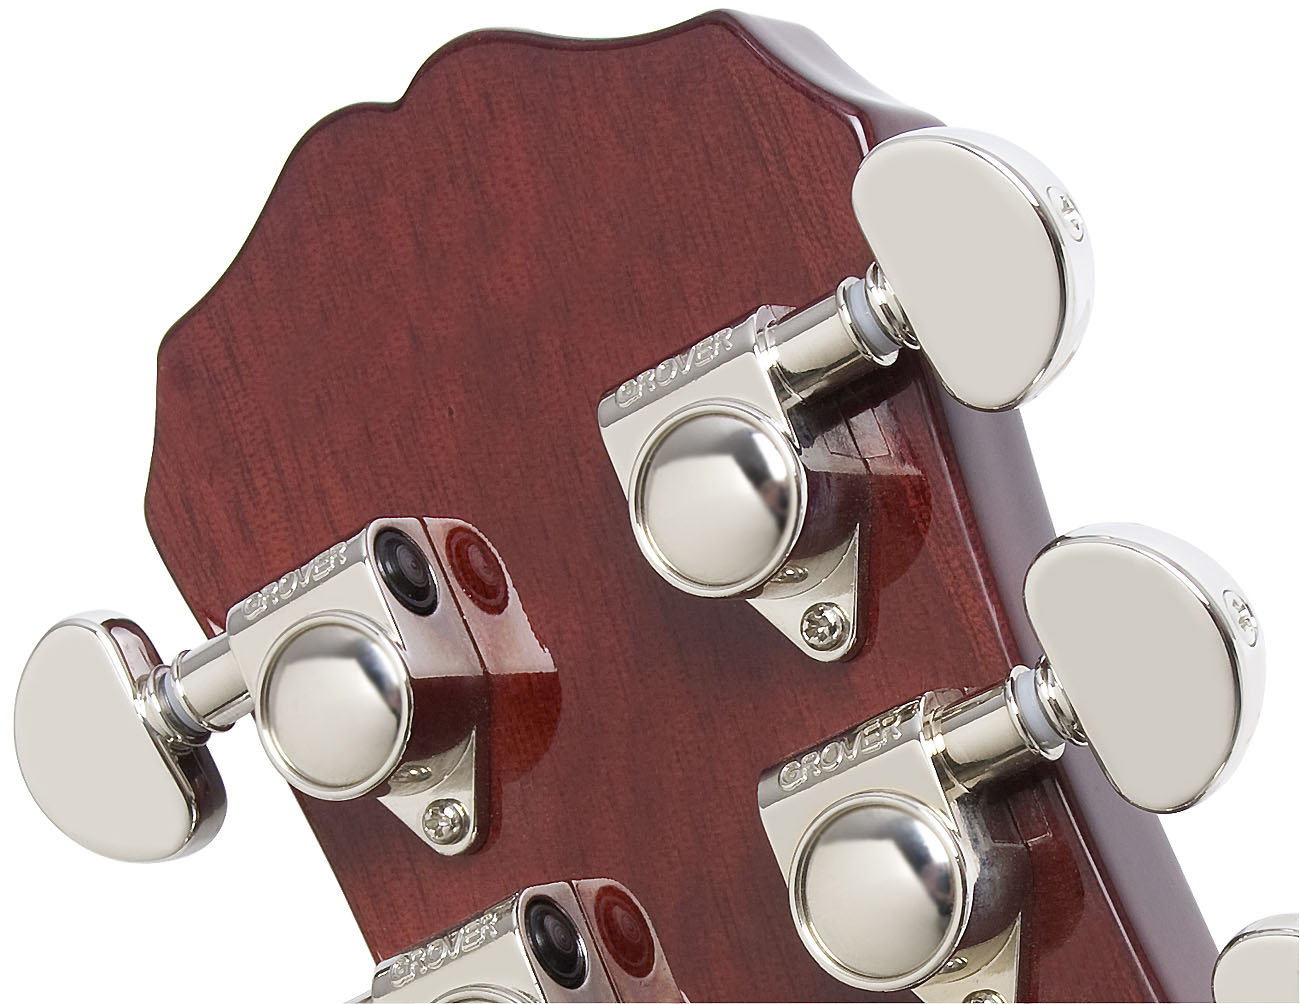 Epiphone Les Paul Standard Hh Ht Pf - Metallic Gold - Enkel gesneden elektrische gitaar - Variation 3